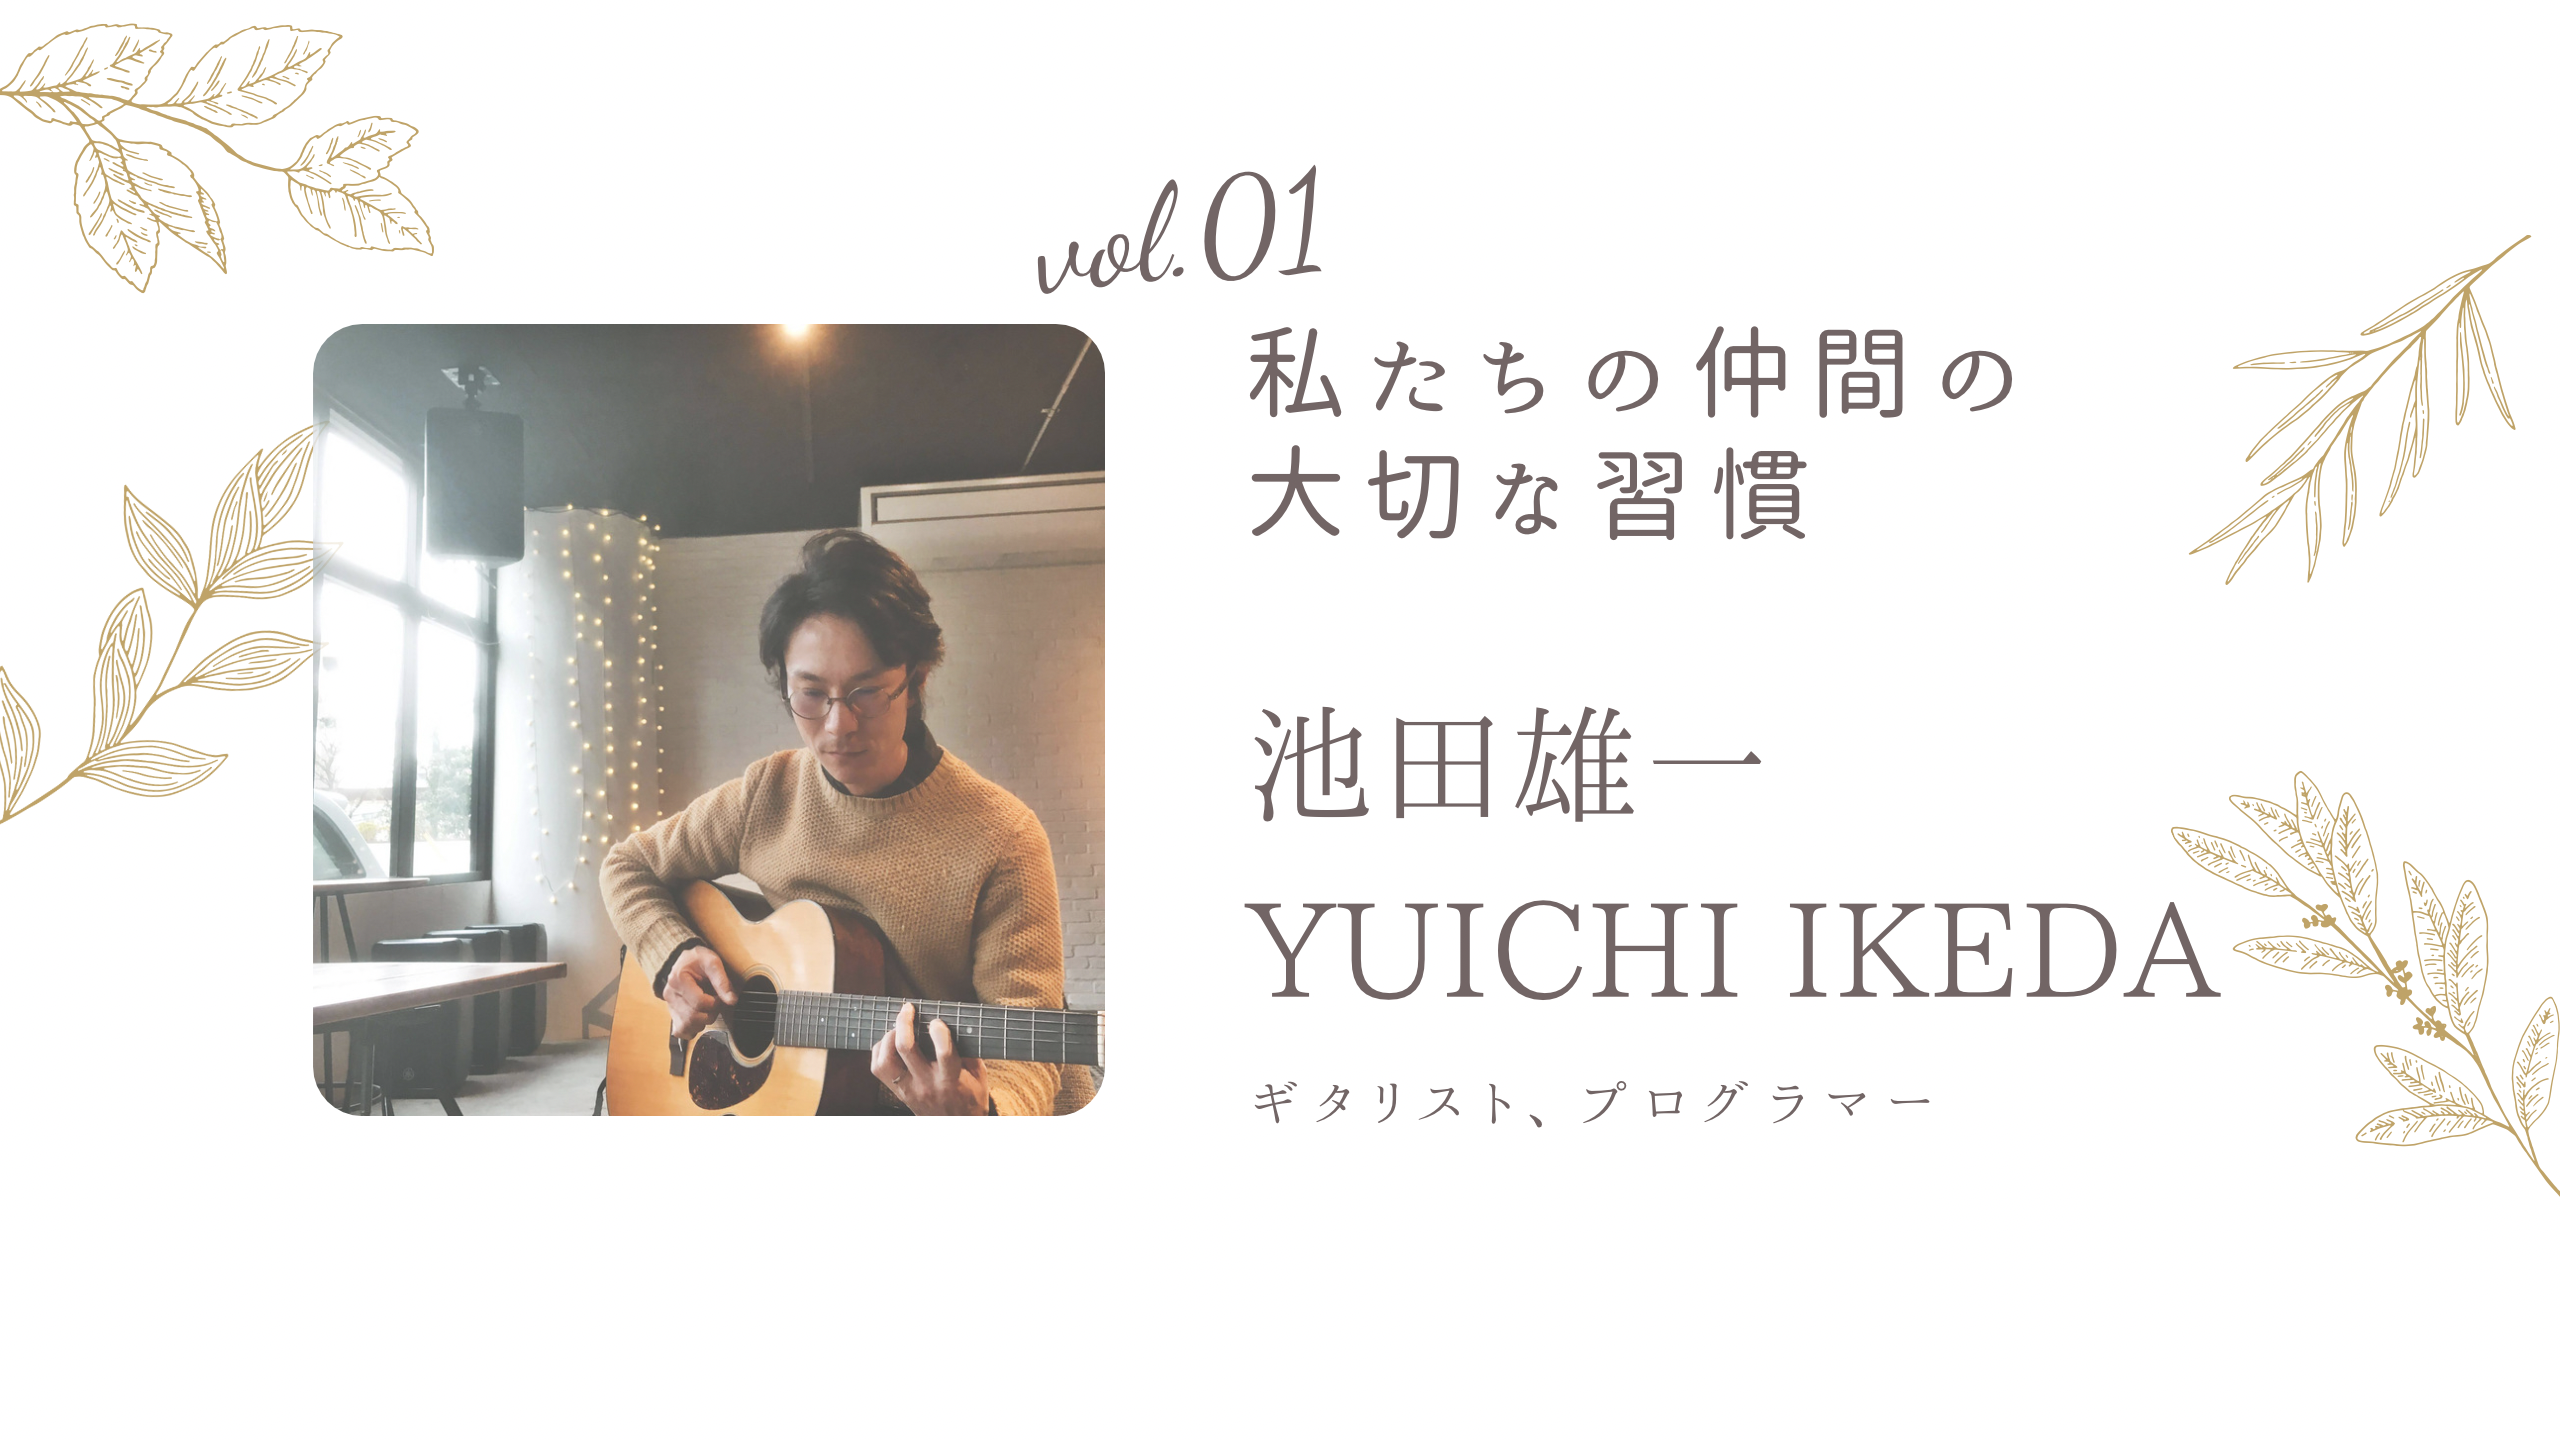 私たち仲間の大切な習慣　vol.01池田雄一 Yuichi Ikeda （ギタリスト、プログラマー）